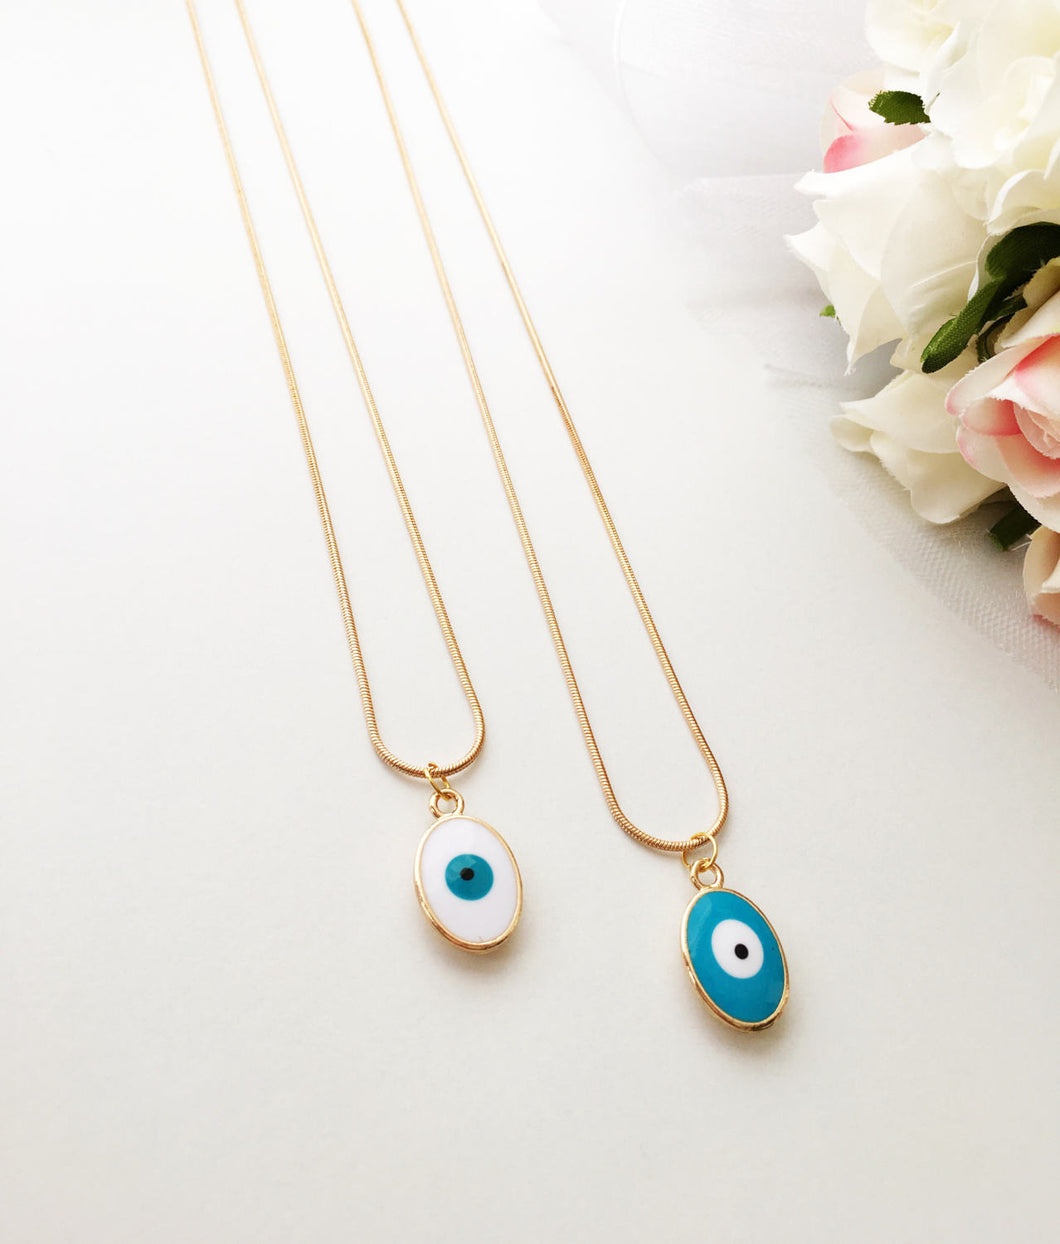 Tiny evil eye necklace, evil eye jewelry, 22K gold plated necklace, turquoise oval evil eye - Evileyefavor